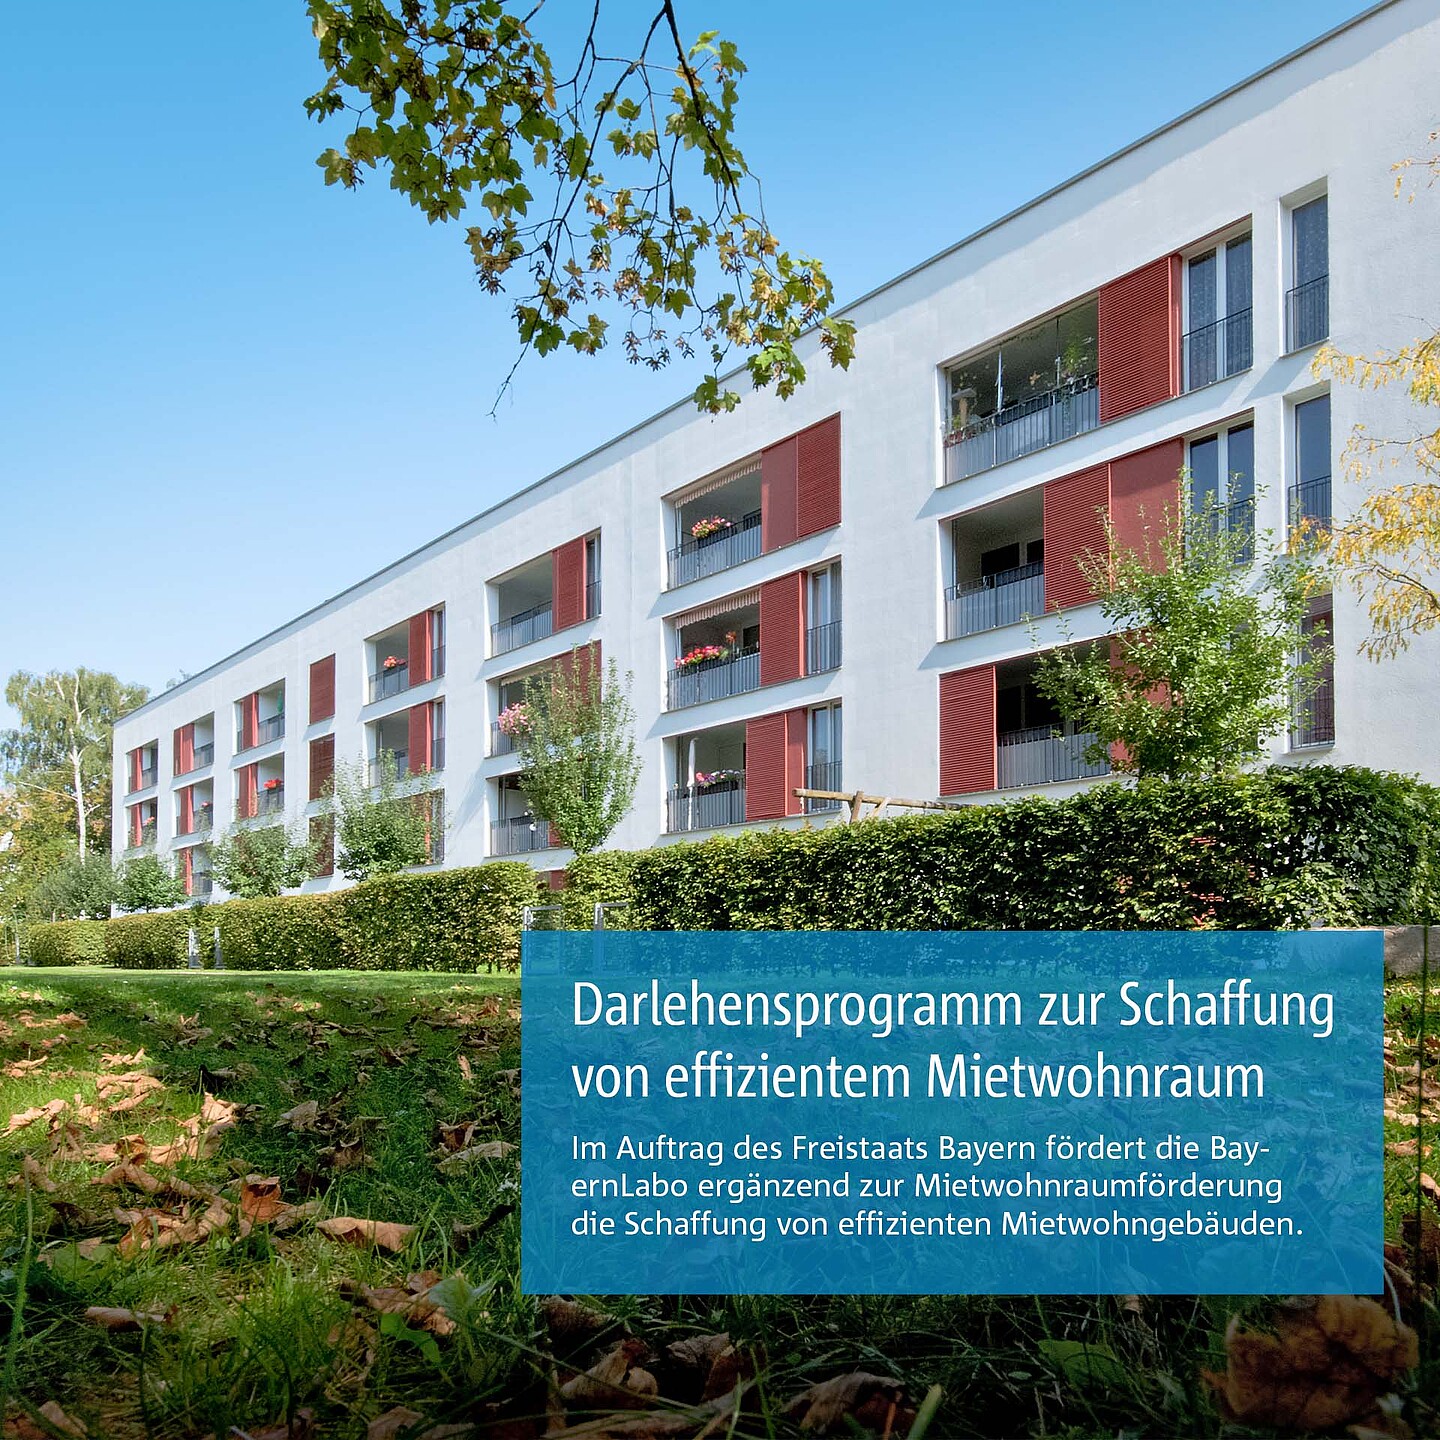 Neubaugebäude für effizienten Mietwohnraum durch Förderprogramme der BayernLabo.